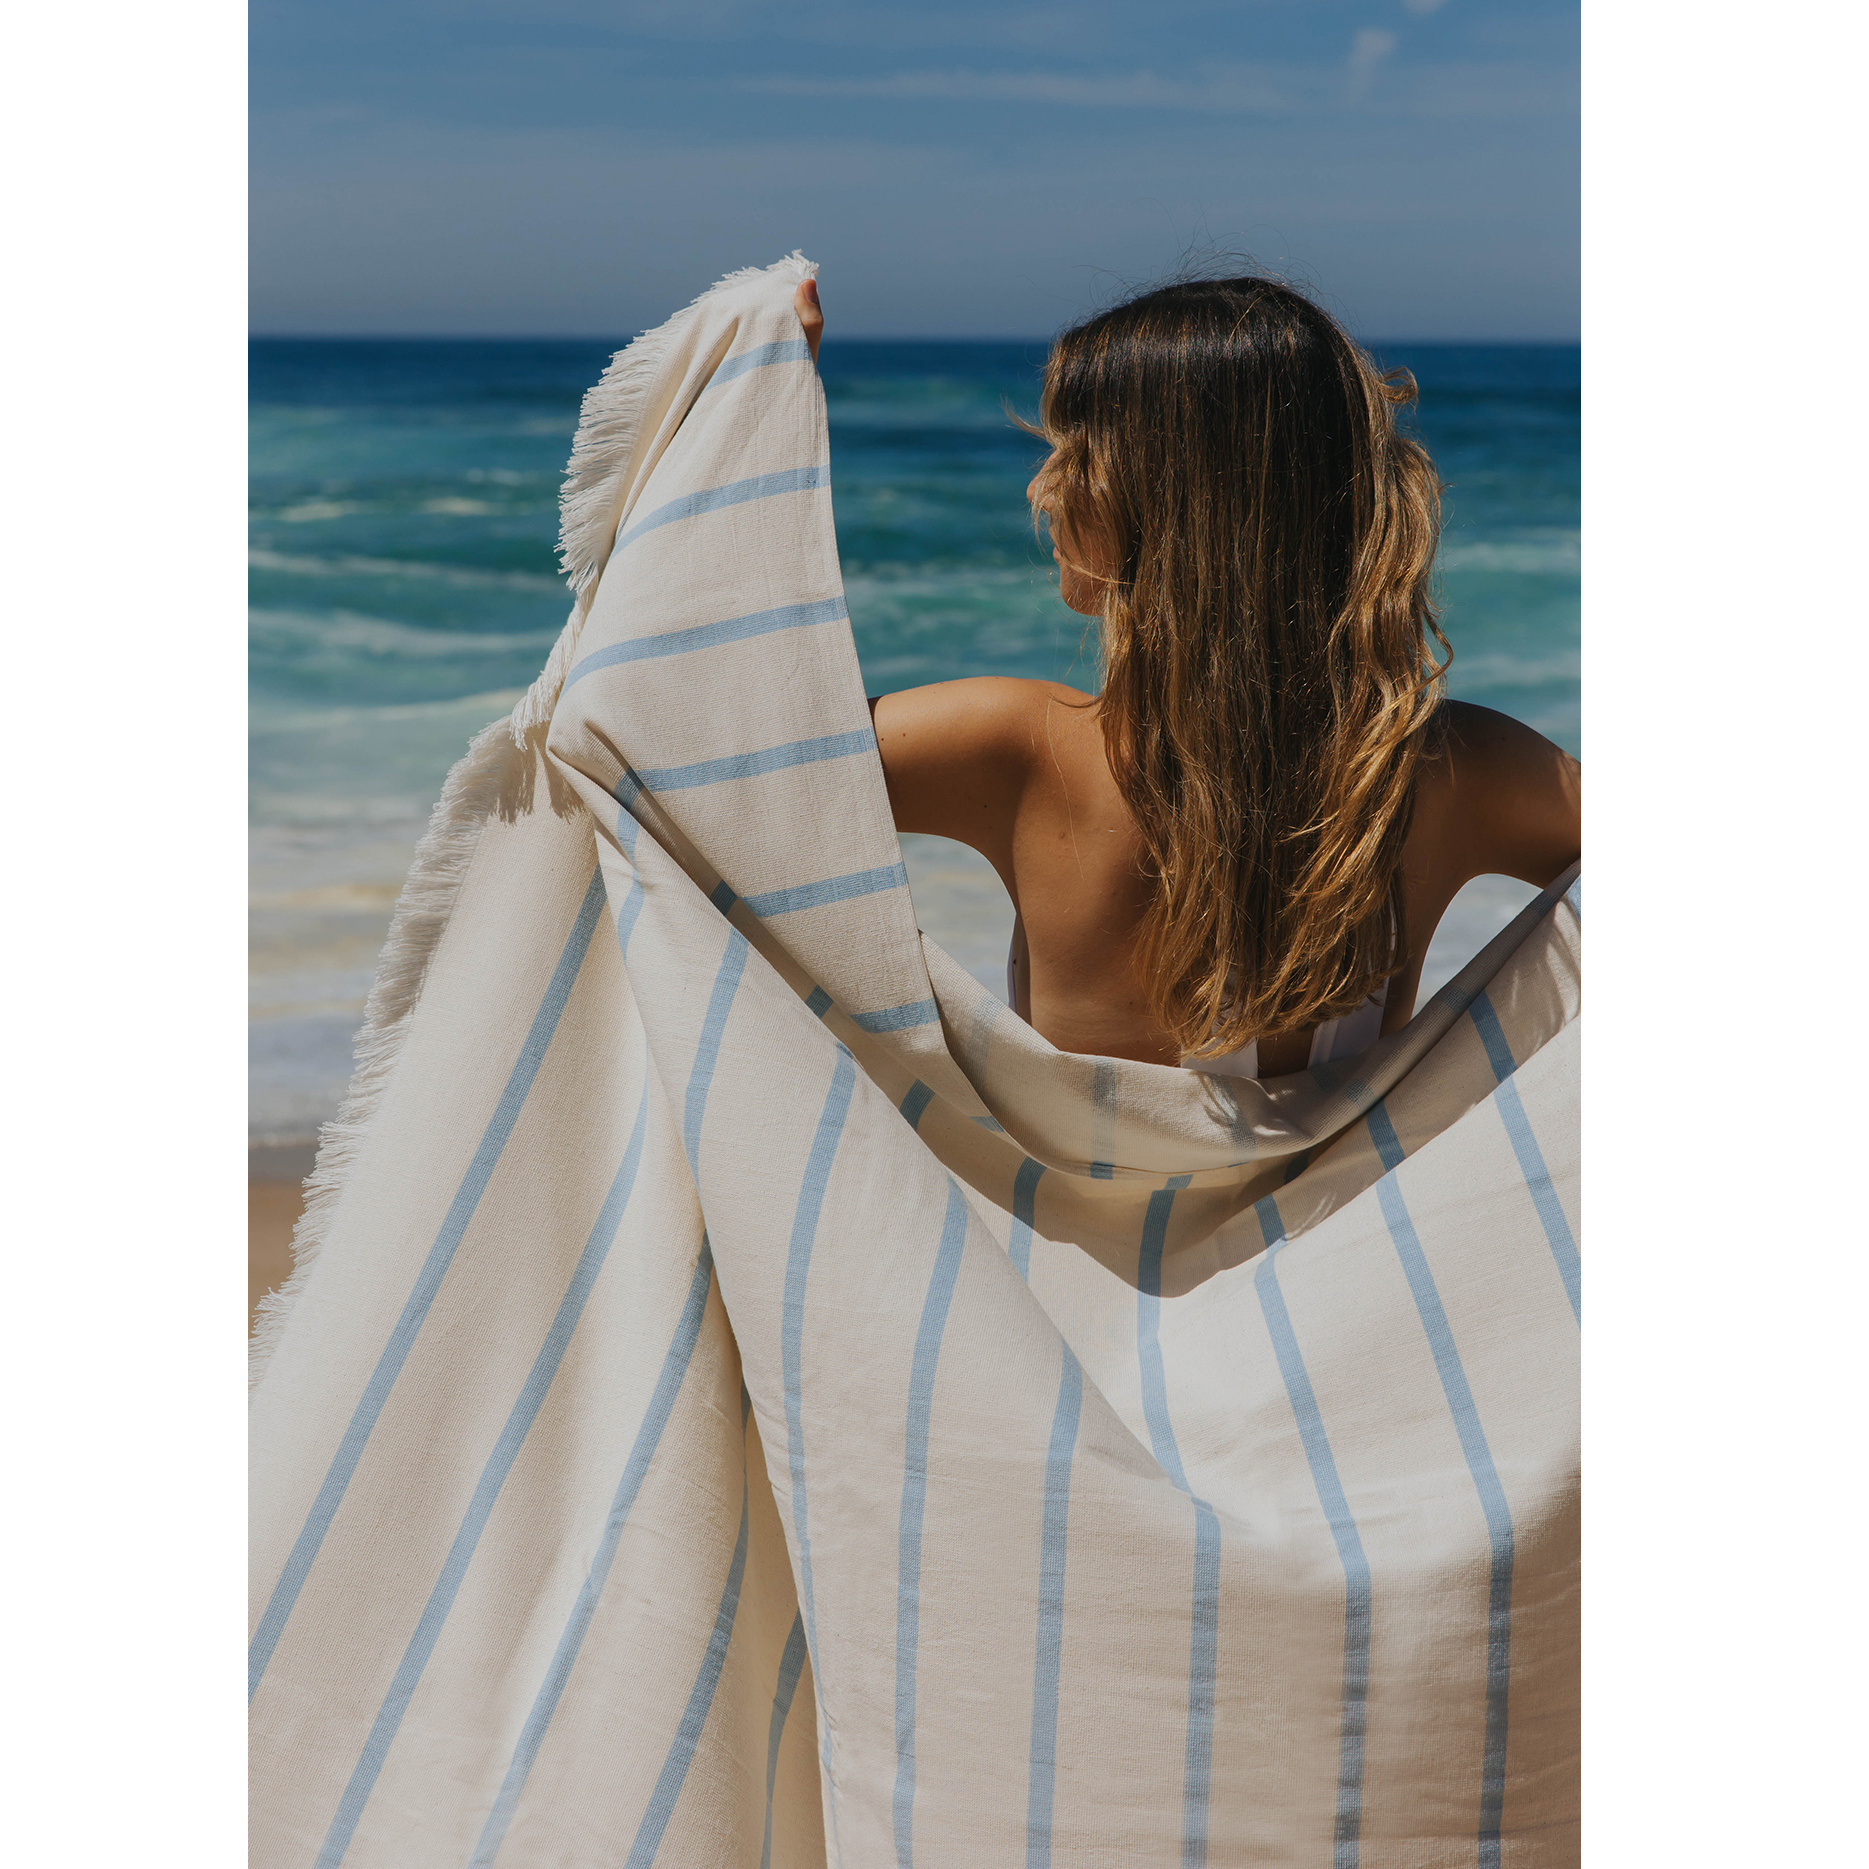 Torres Novas 1845 Beach towel Boa-Nova, Light Blue - 180 x 180 cm - 100% Cotton